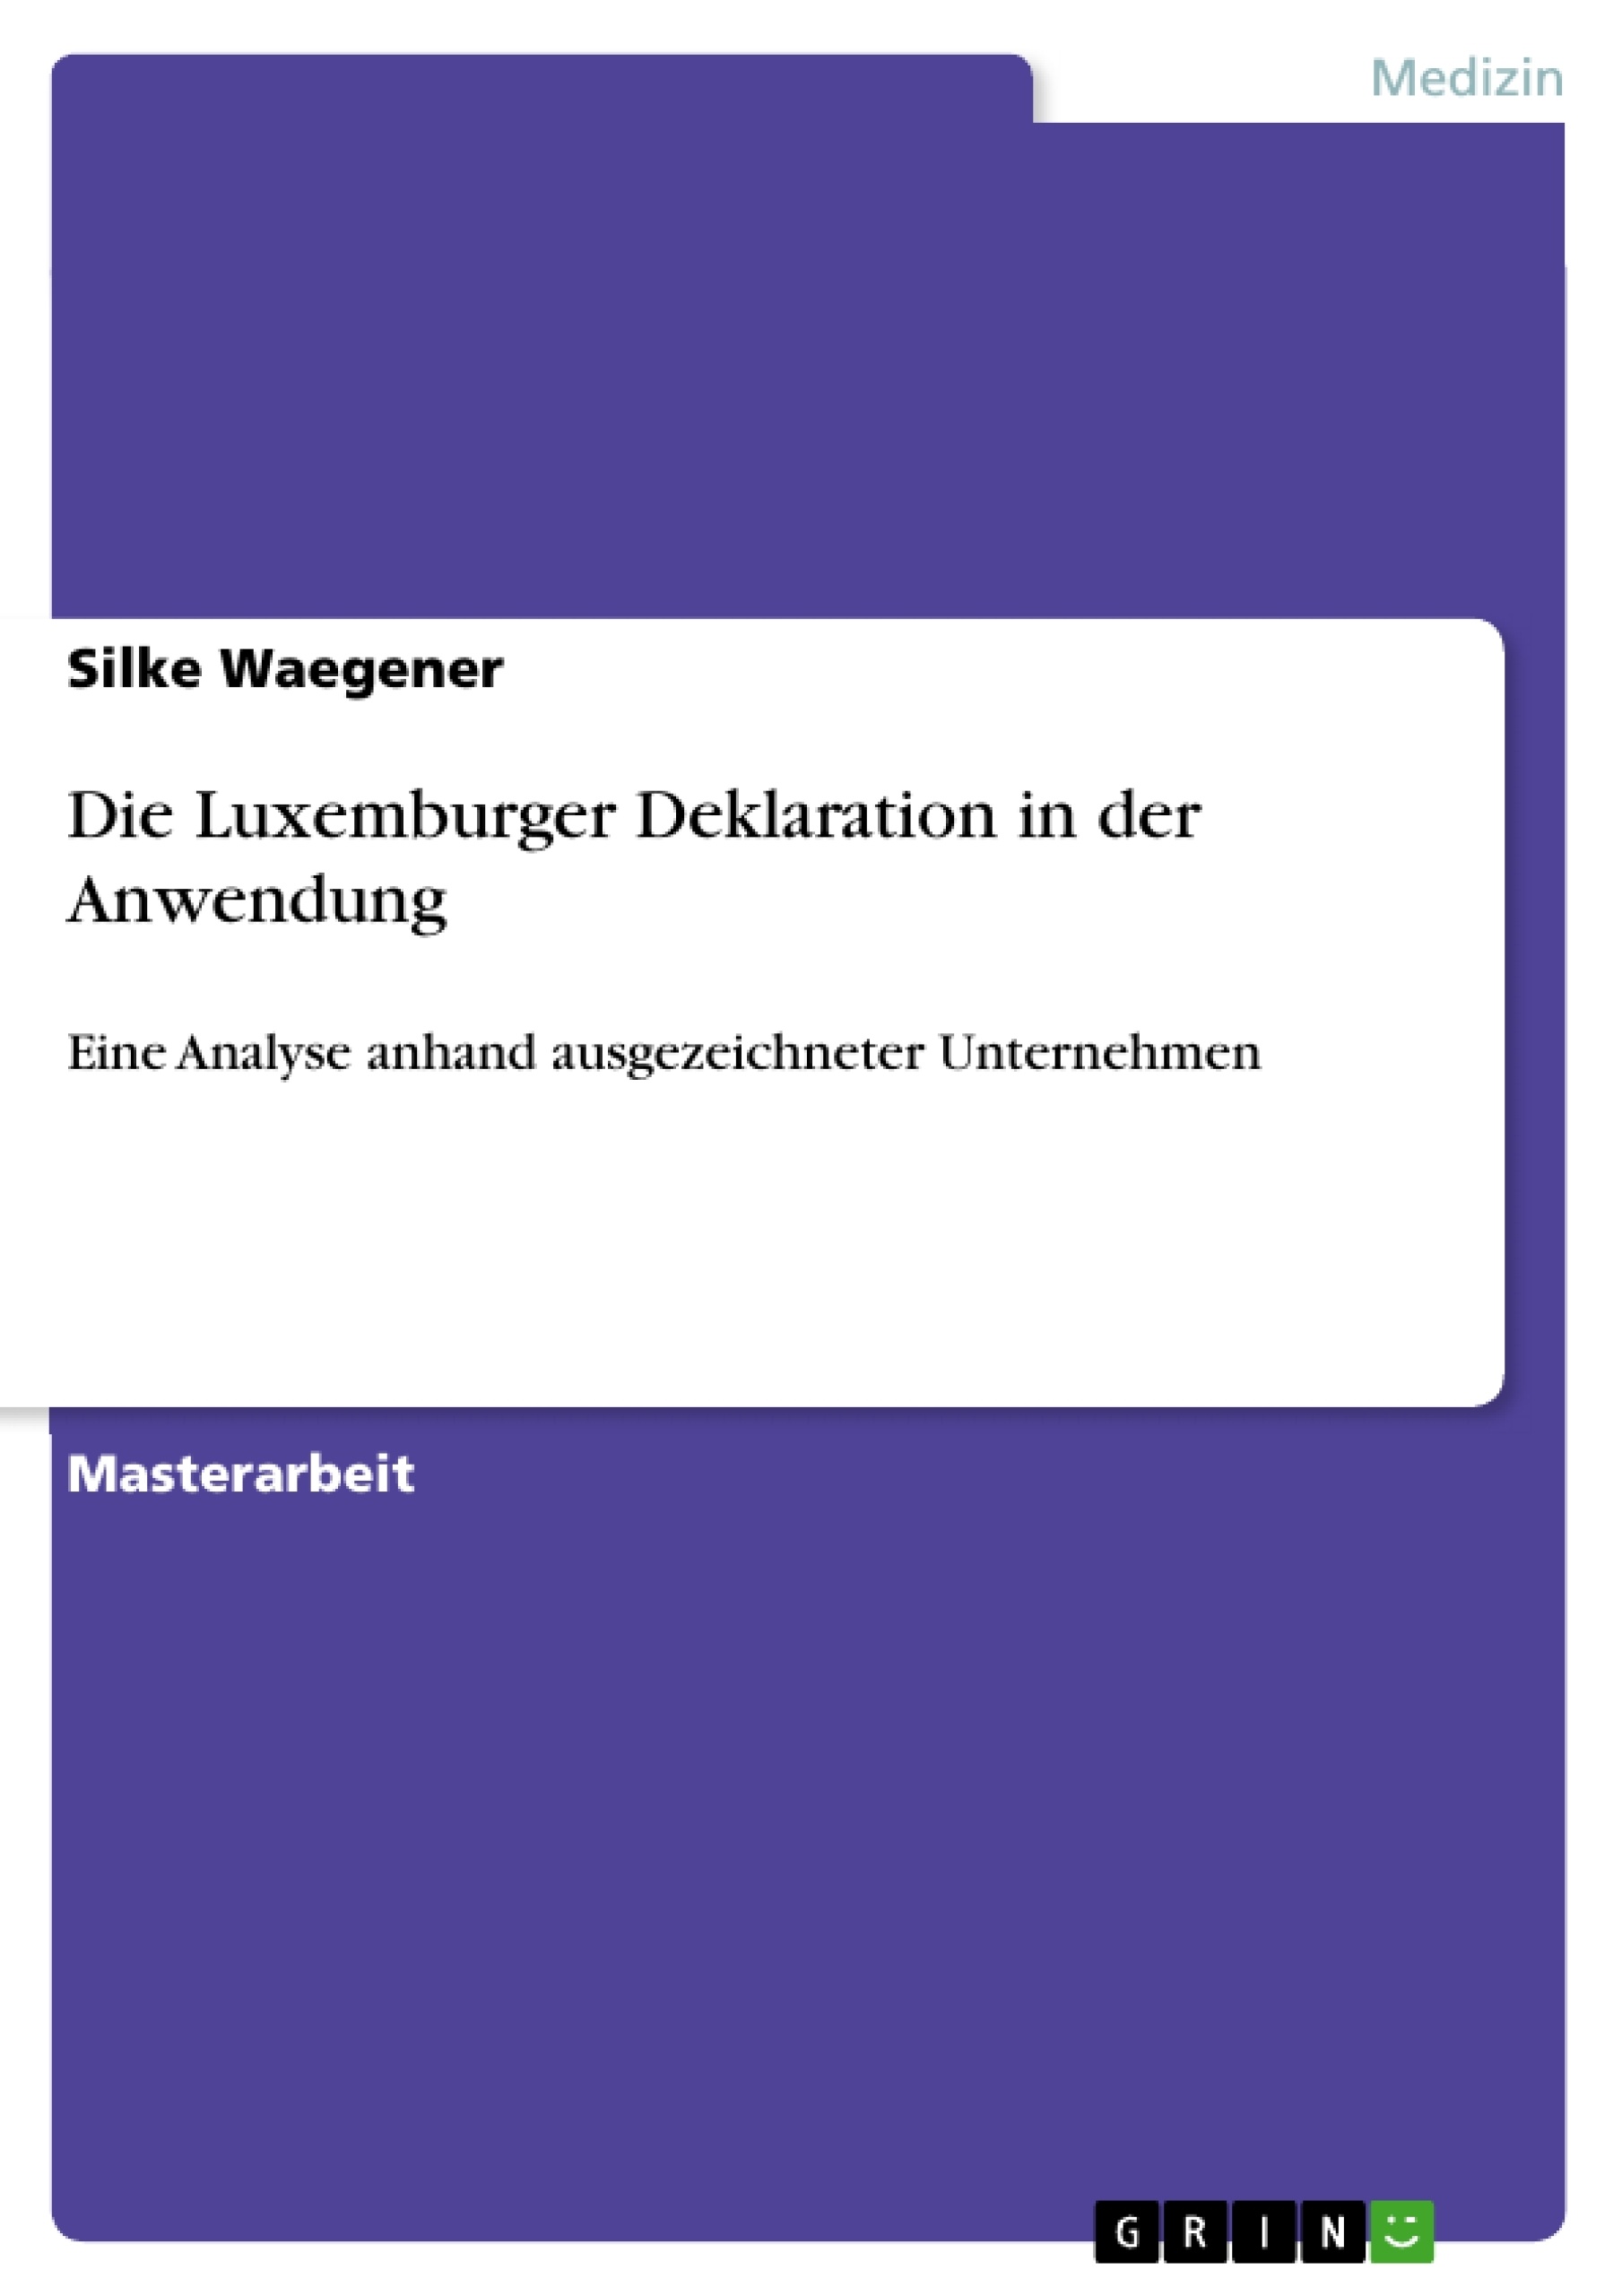 Title: Die Luxemburger Deklaration in der Anwendung